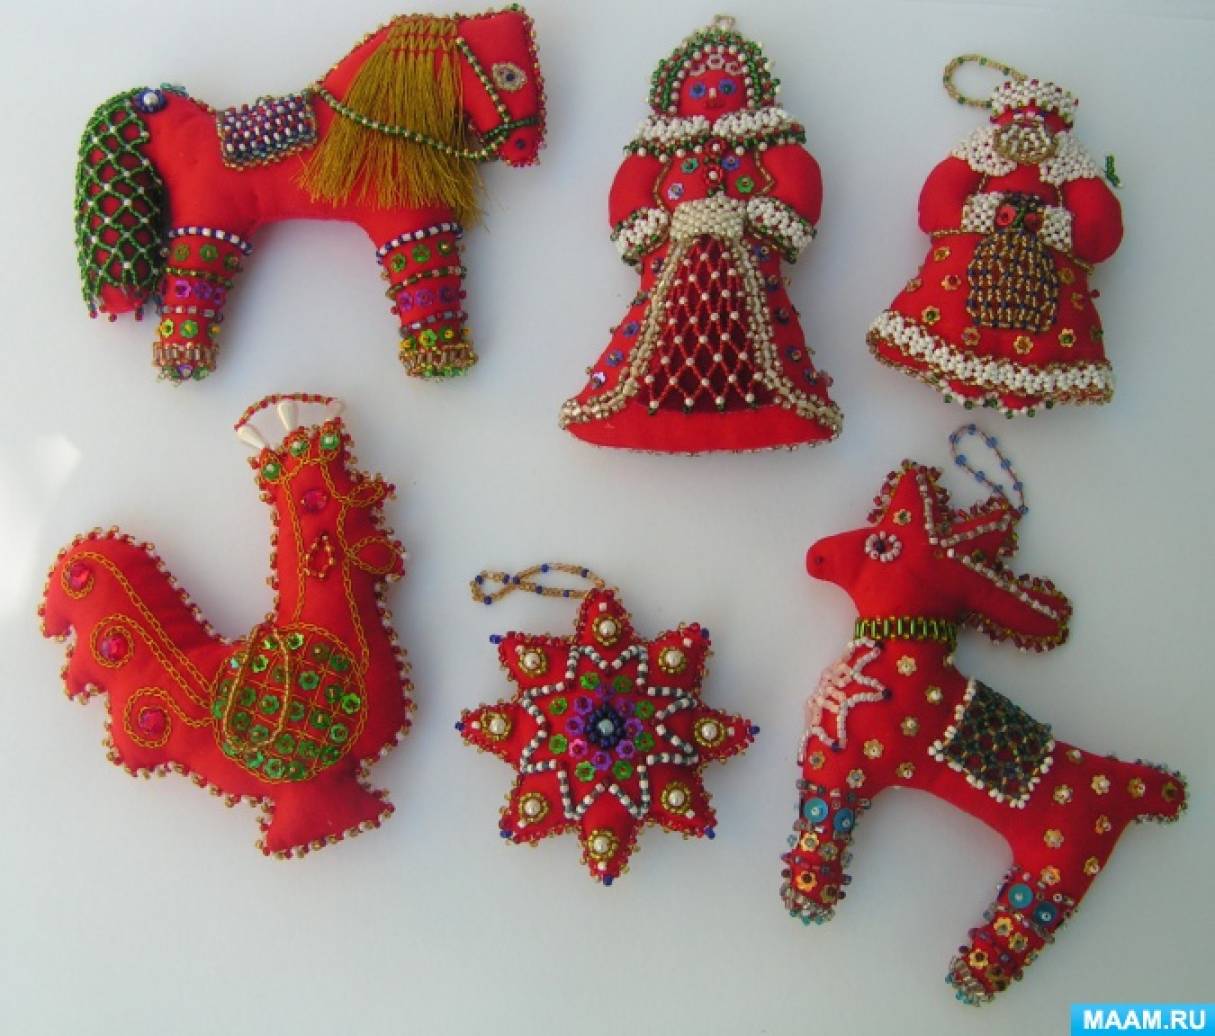 Купить подарки и сувениры - мягкие игрушки по цене от ₽ в Санкт-Петербурге | Flawery